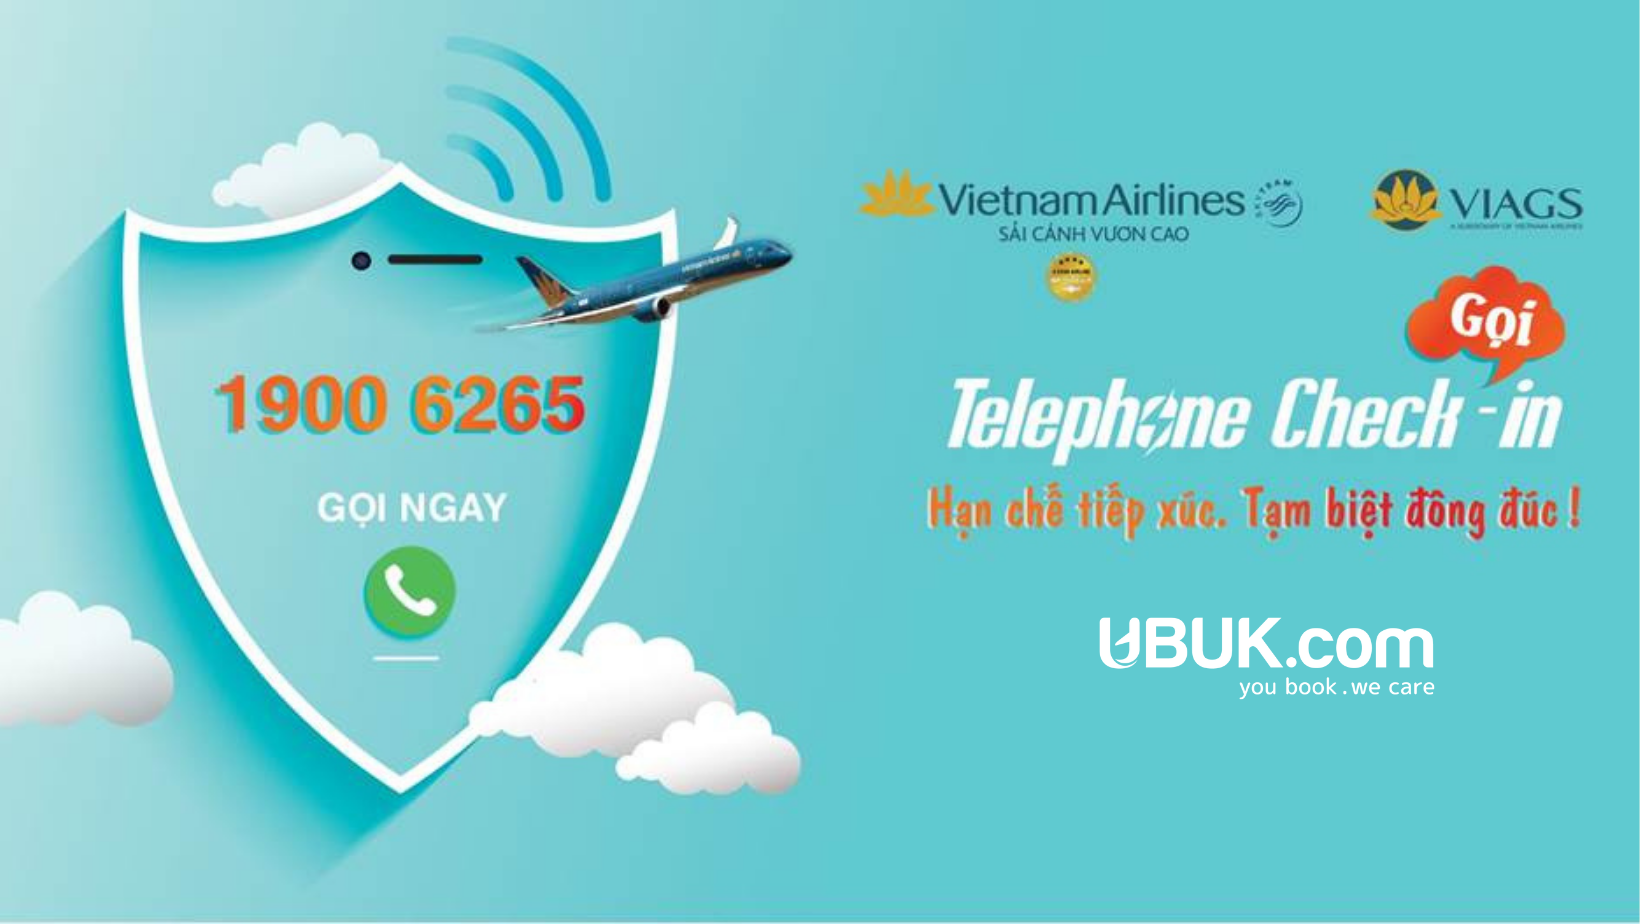 VIETNAM AIRLINES - TELEPHONE CHECK-IN DỄ DÀNG - CHUYẾN BAY AN TOÀN - HOTLINE 1900 6265